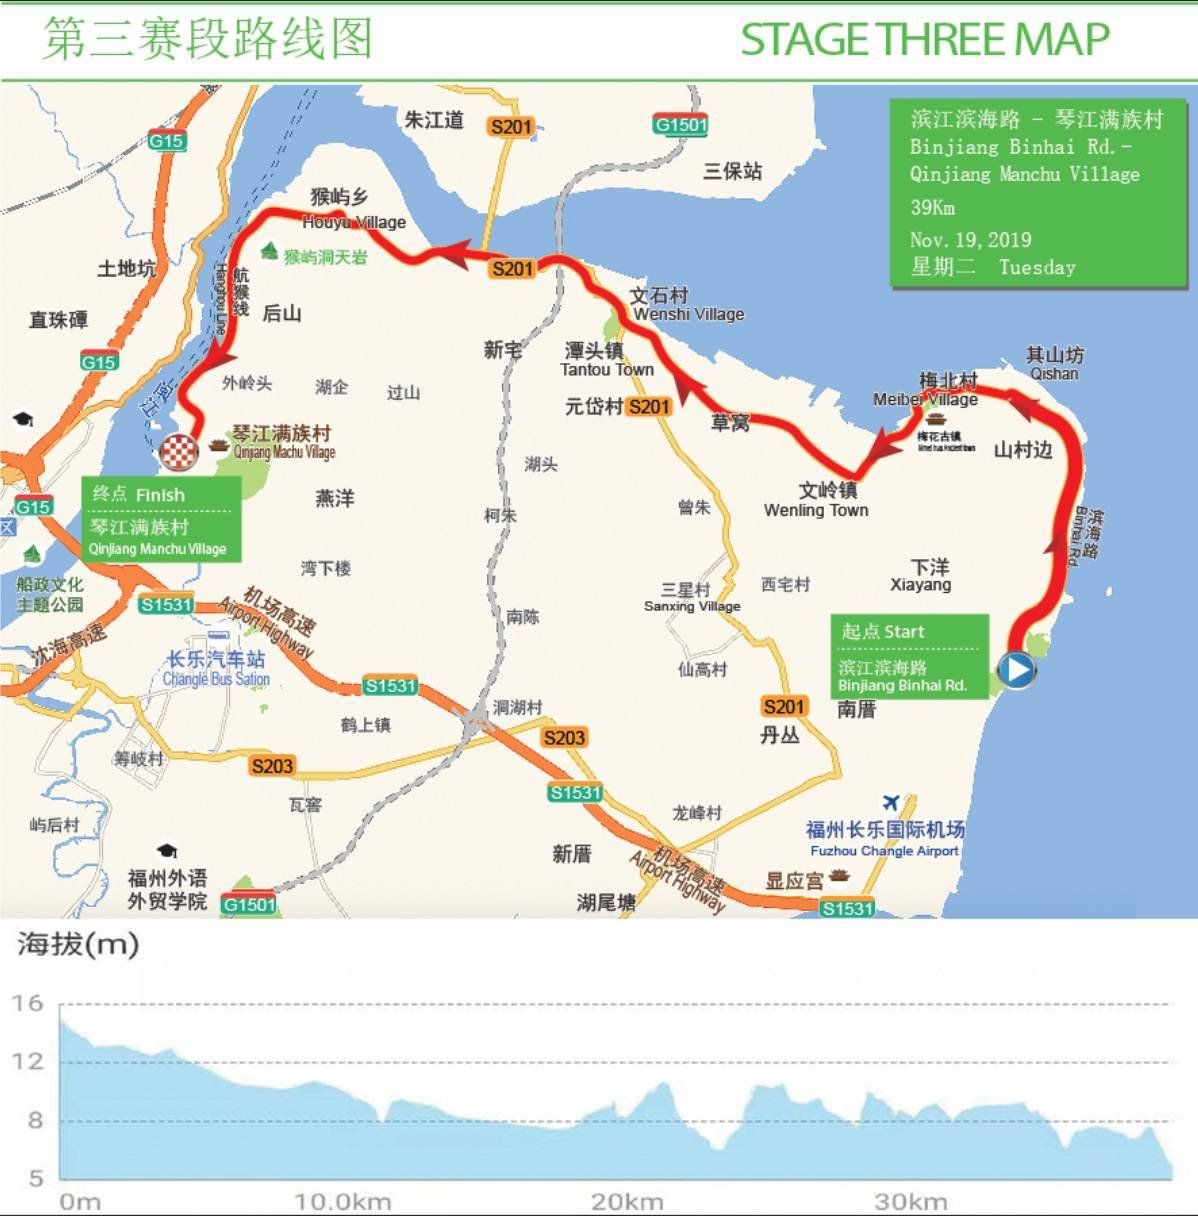 2019环福州永泰国际公路自行车赛路线图